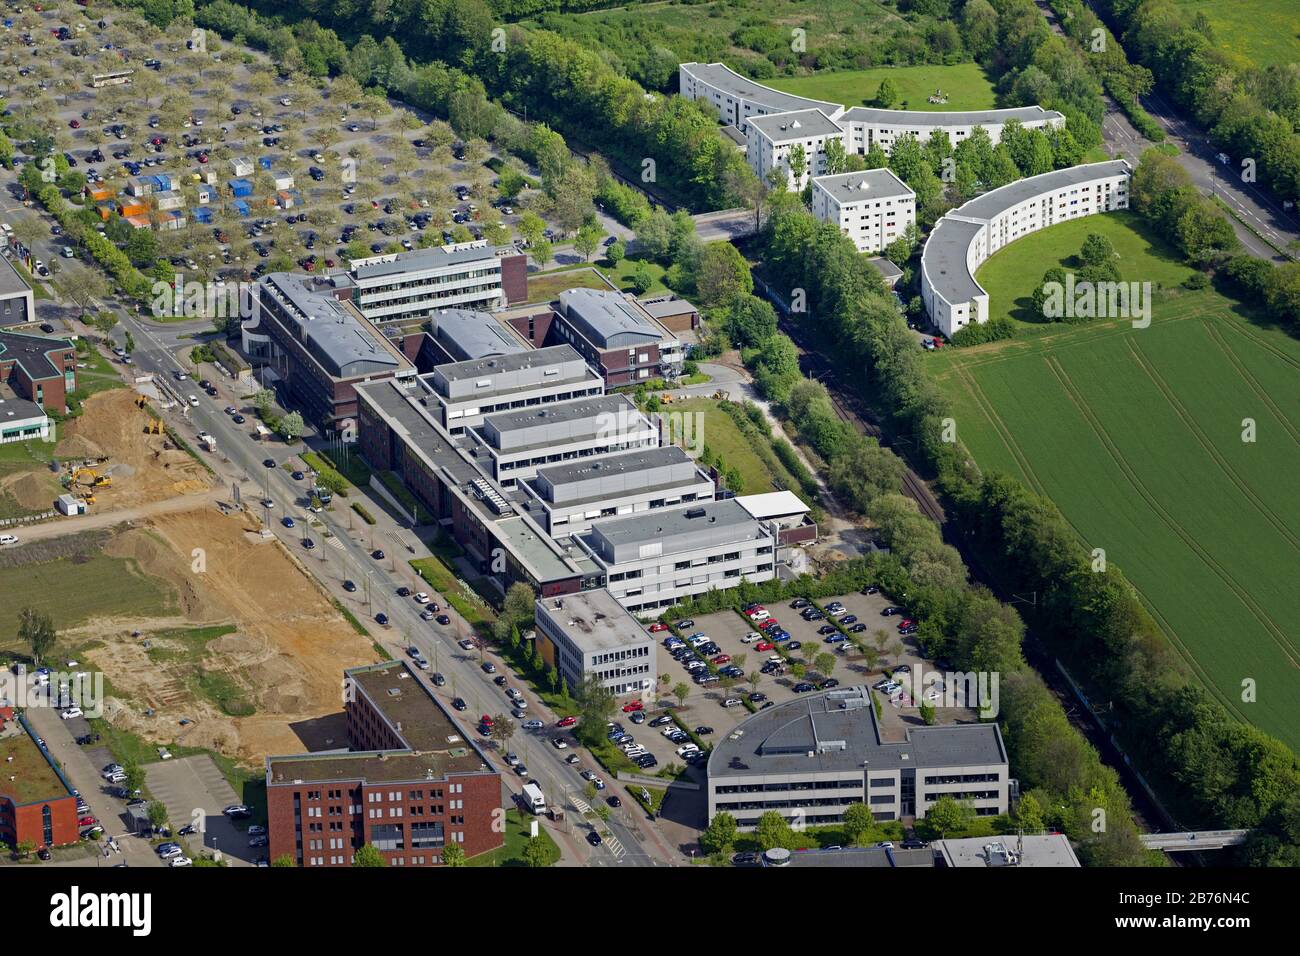 Institut Max Planck de physiologie moléculaire à Dortmund, 04.05.2012, vue aérienne, Allemagne, Rhénanie-du-Nord-Westphalie, région de la Ruhr, Dortmund Banque D'Images